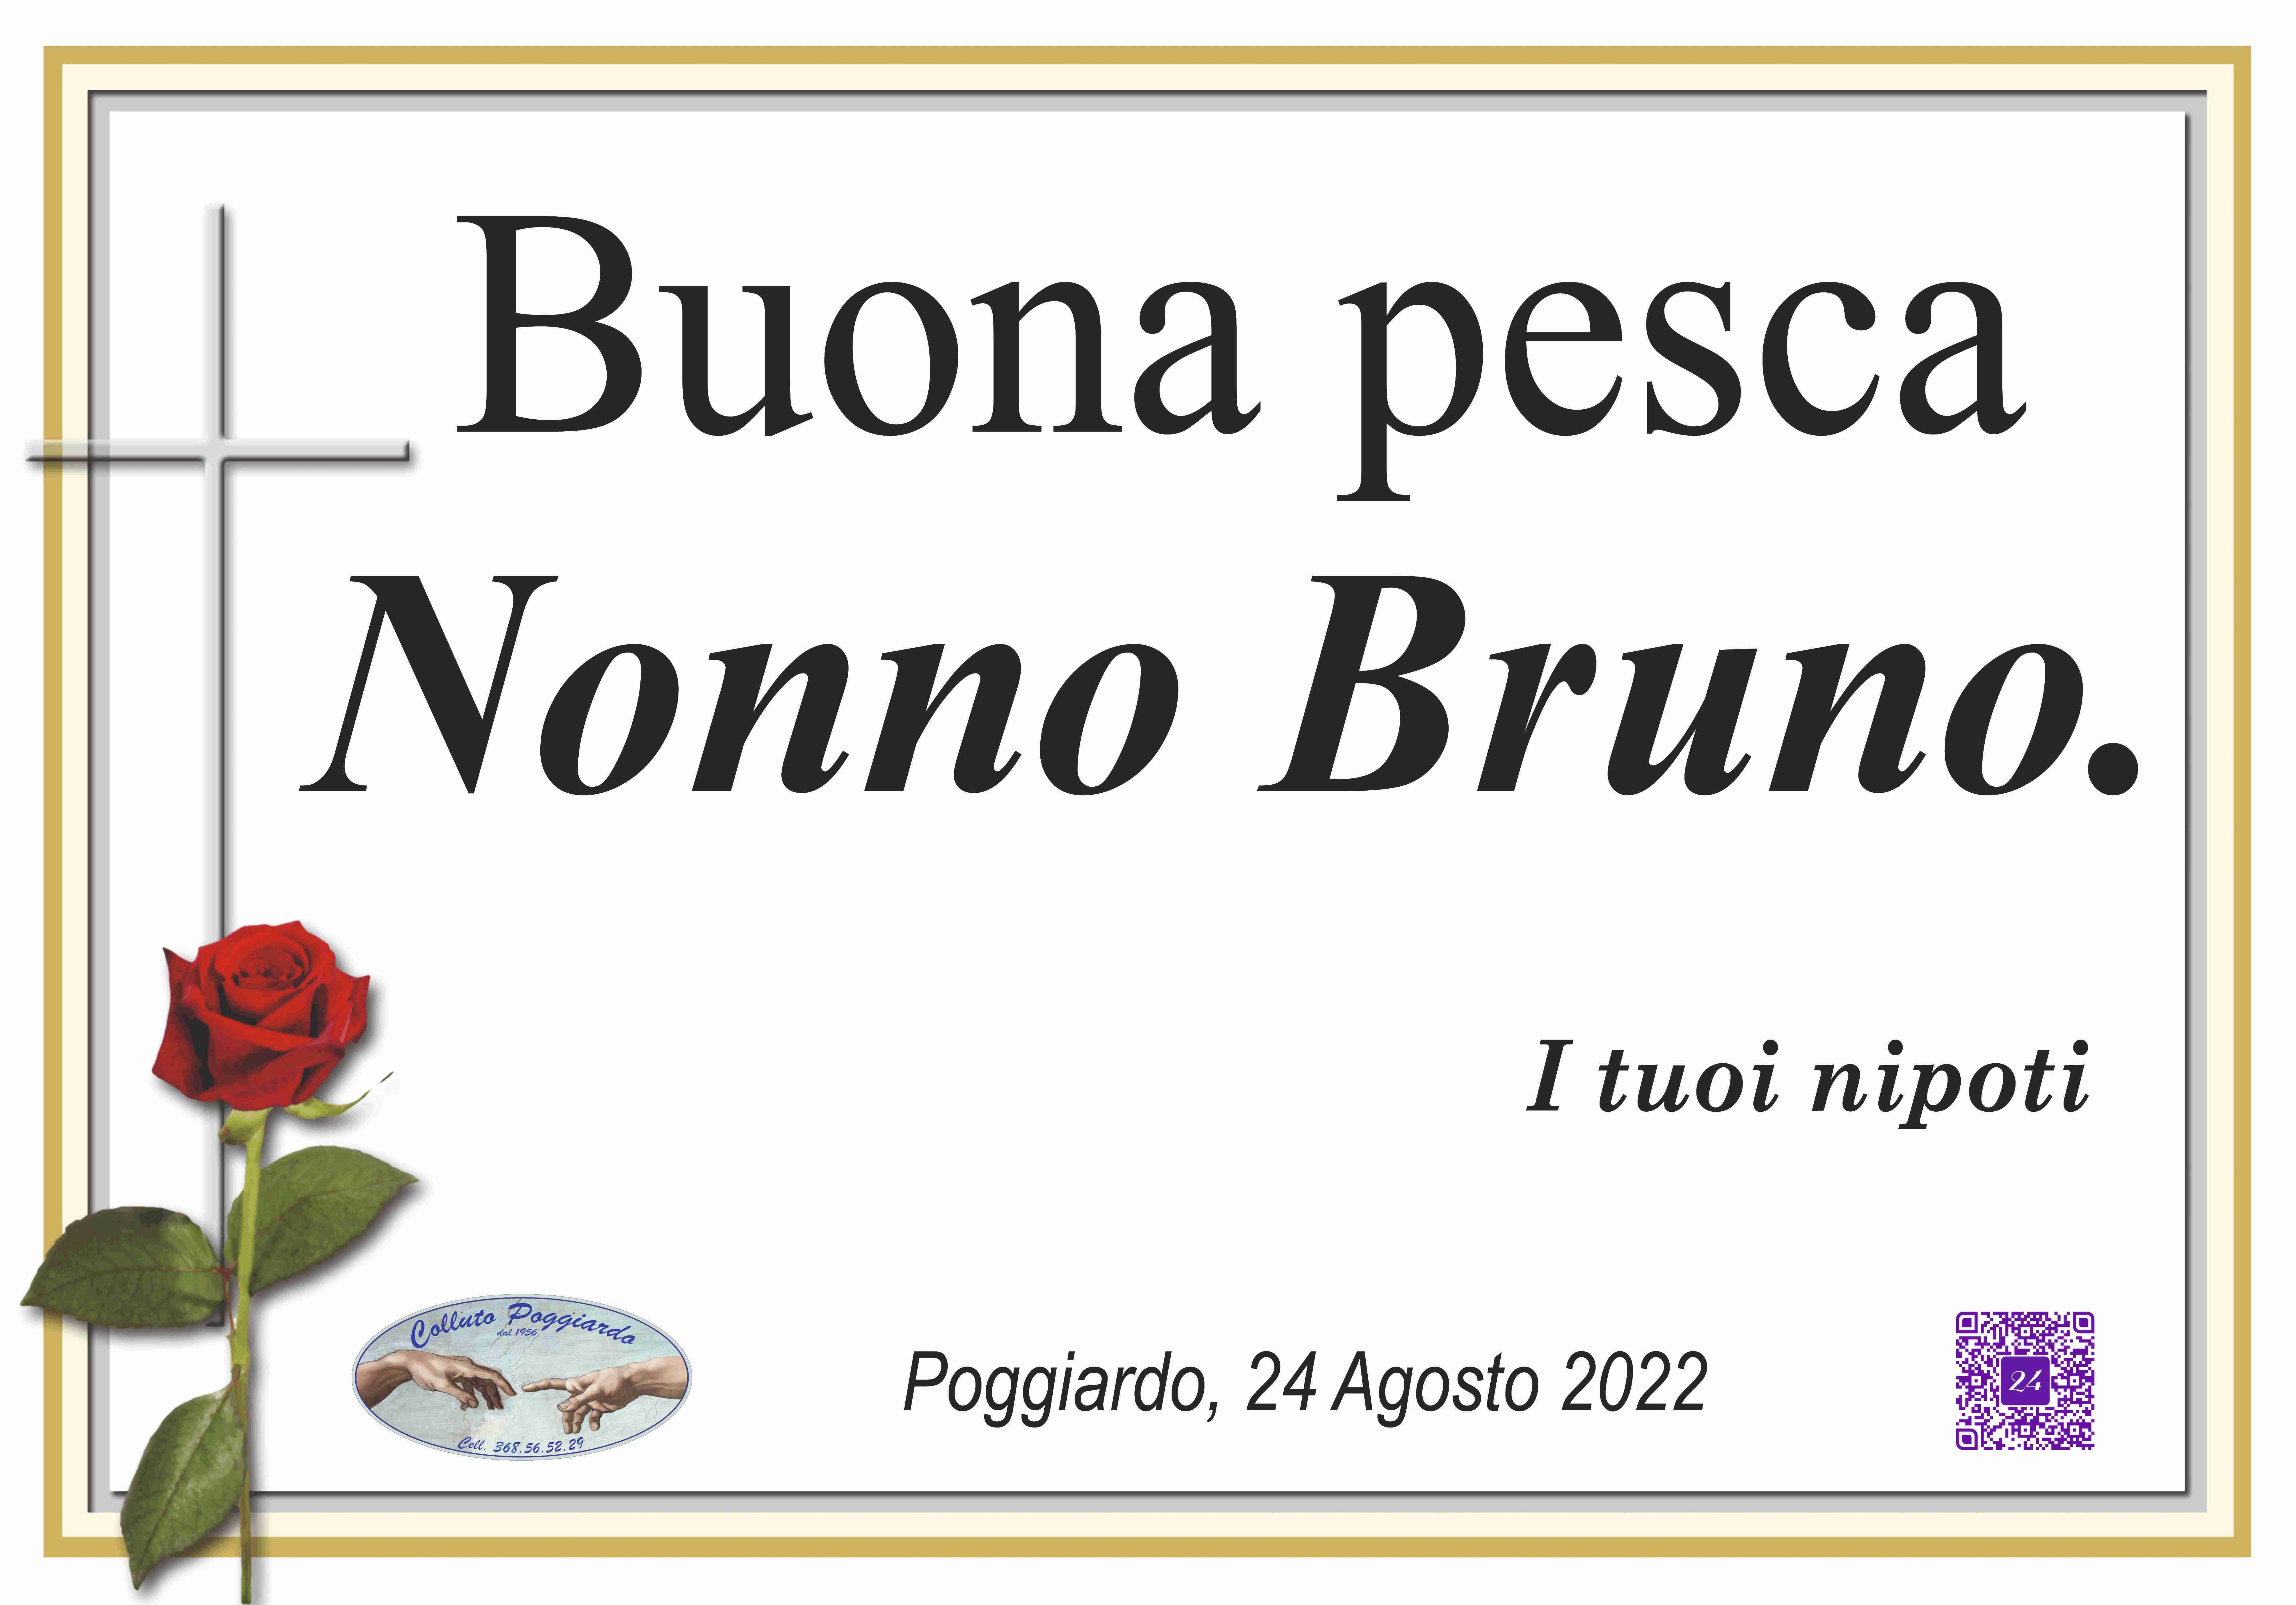 Bruno Trono